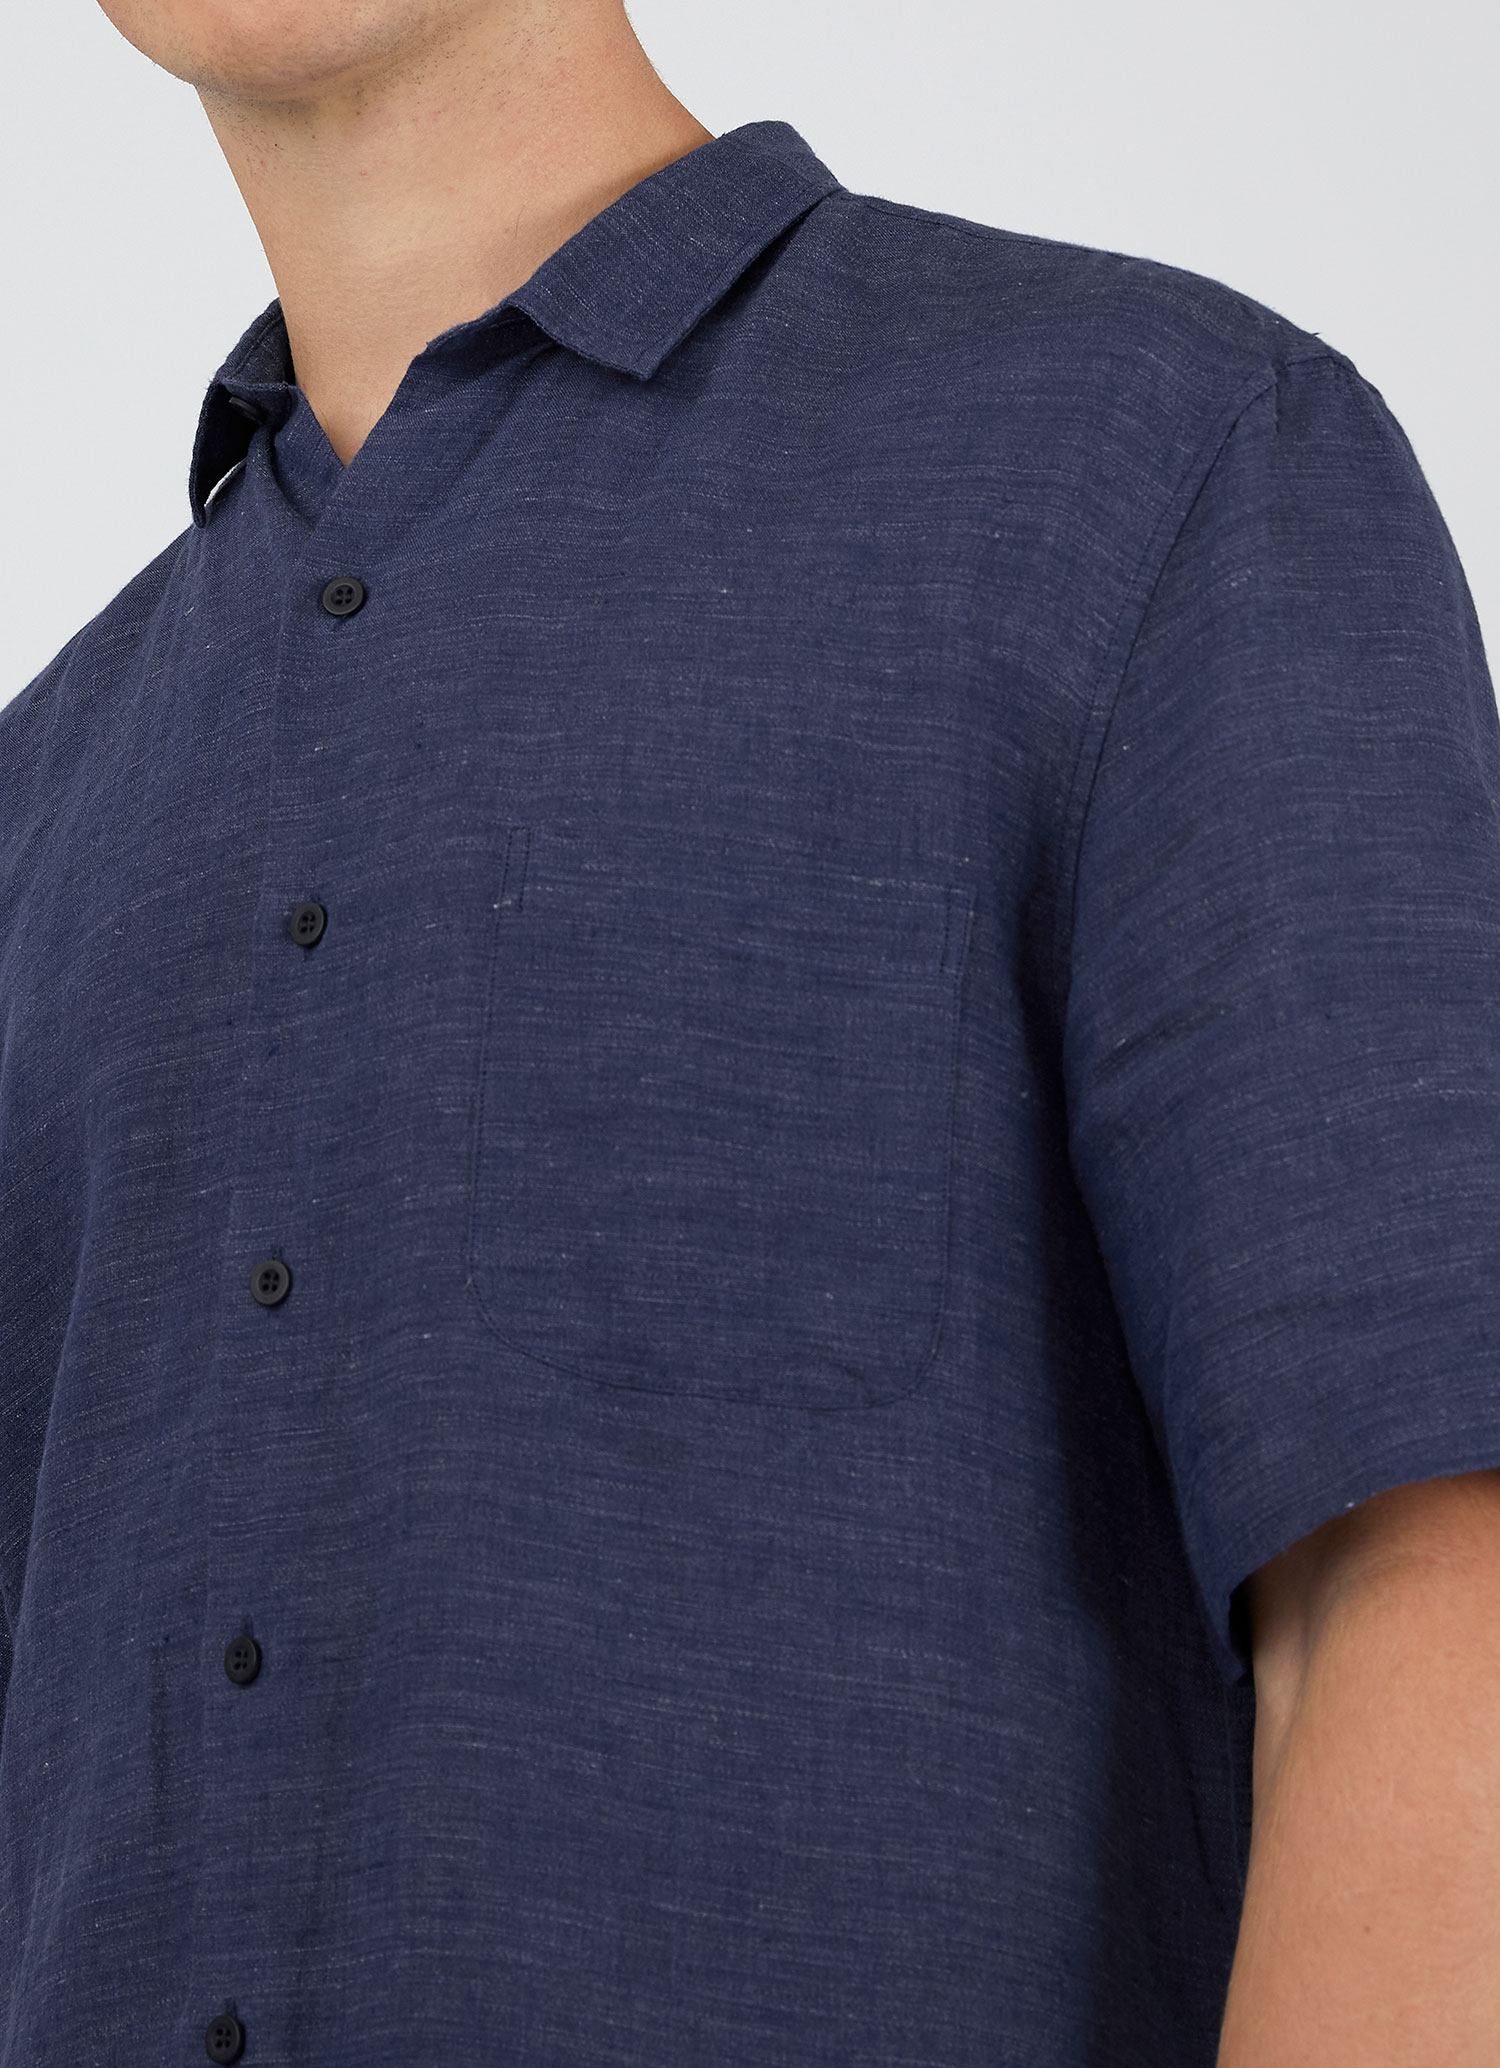 Men's Linen Short Sleeve Shirt in Navy Melange